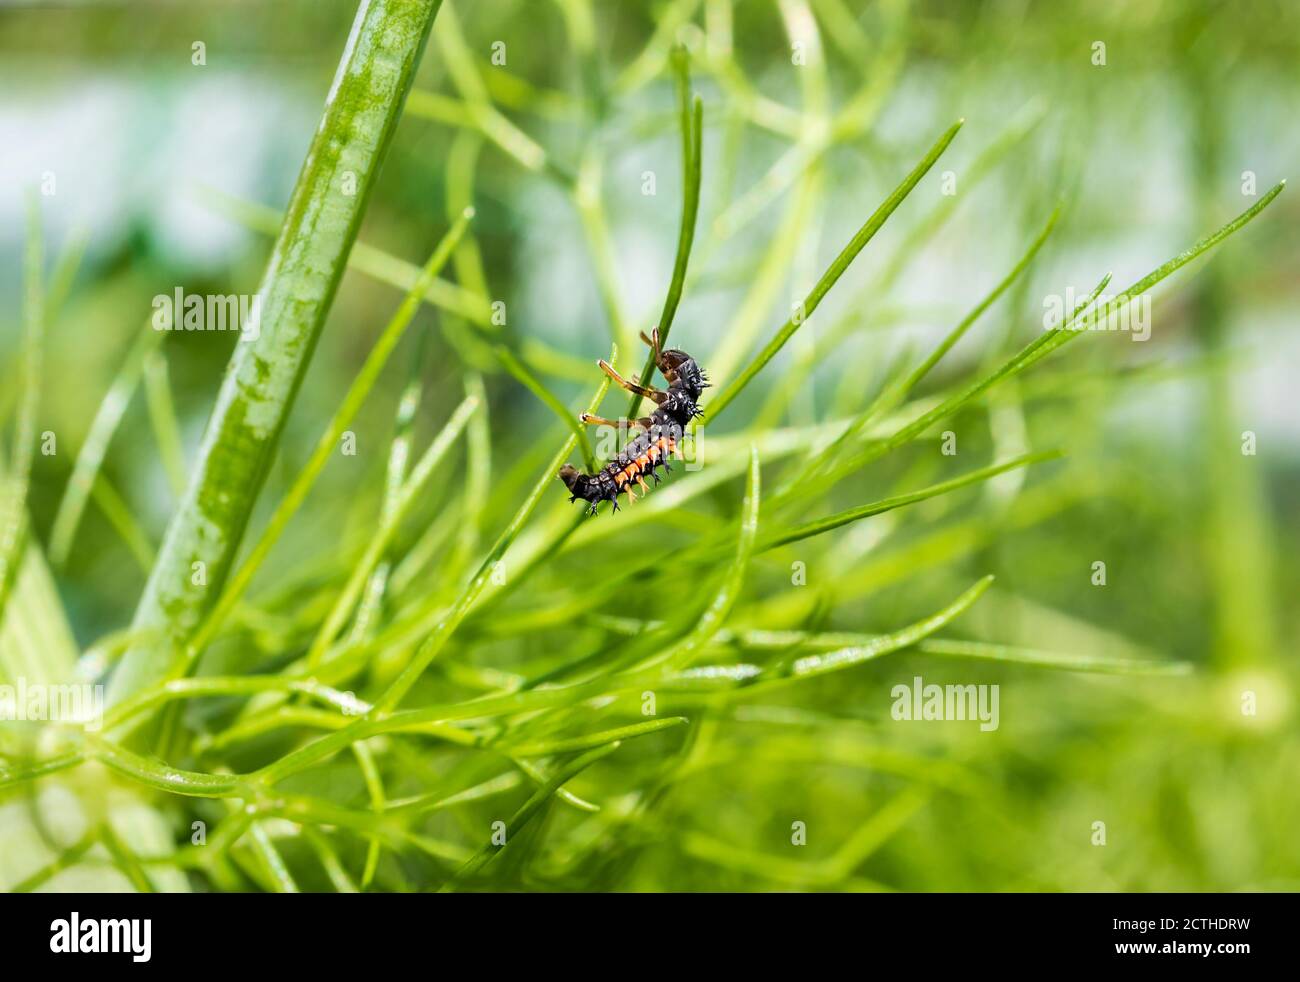 Marienkäfer Larven oder Nymphe in der Mitte von weichen Fenchel Wedel. Extrem vorteilhaft Bug für den Garten, wie es verbraucht / frisst Blattläuse und andere Schädlinge. Stockfoto